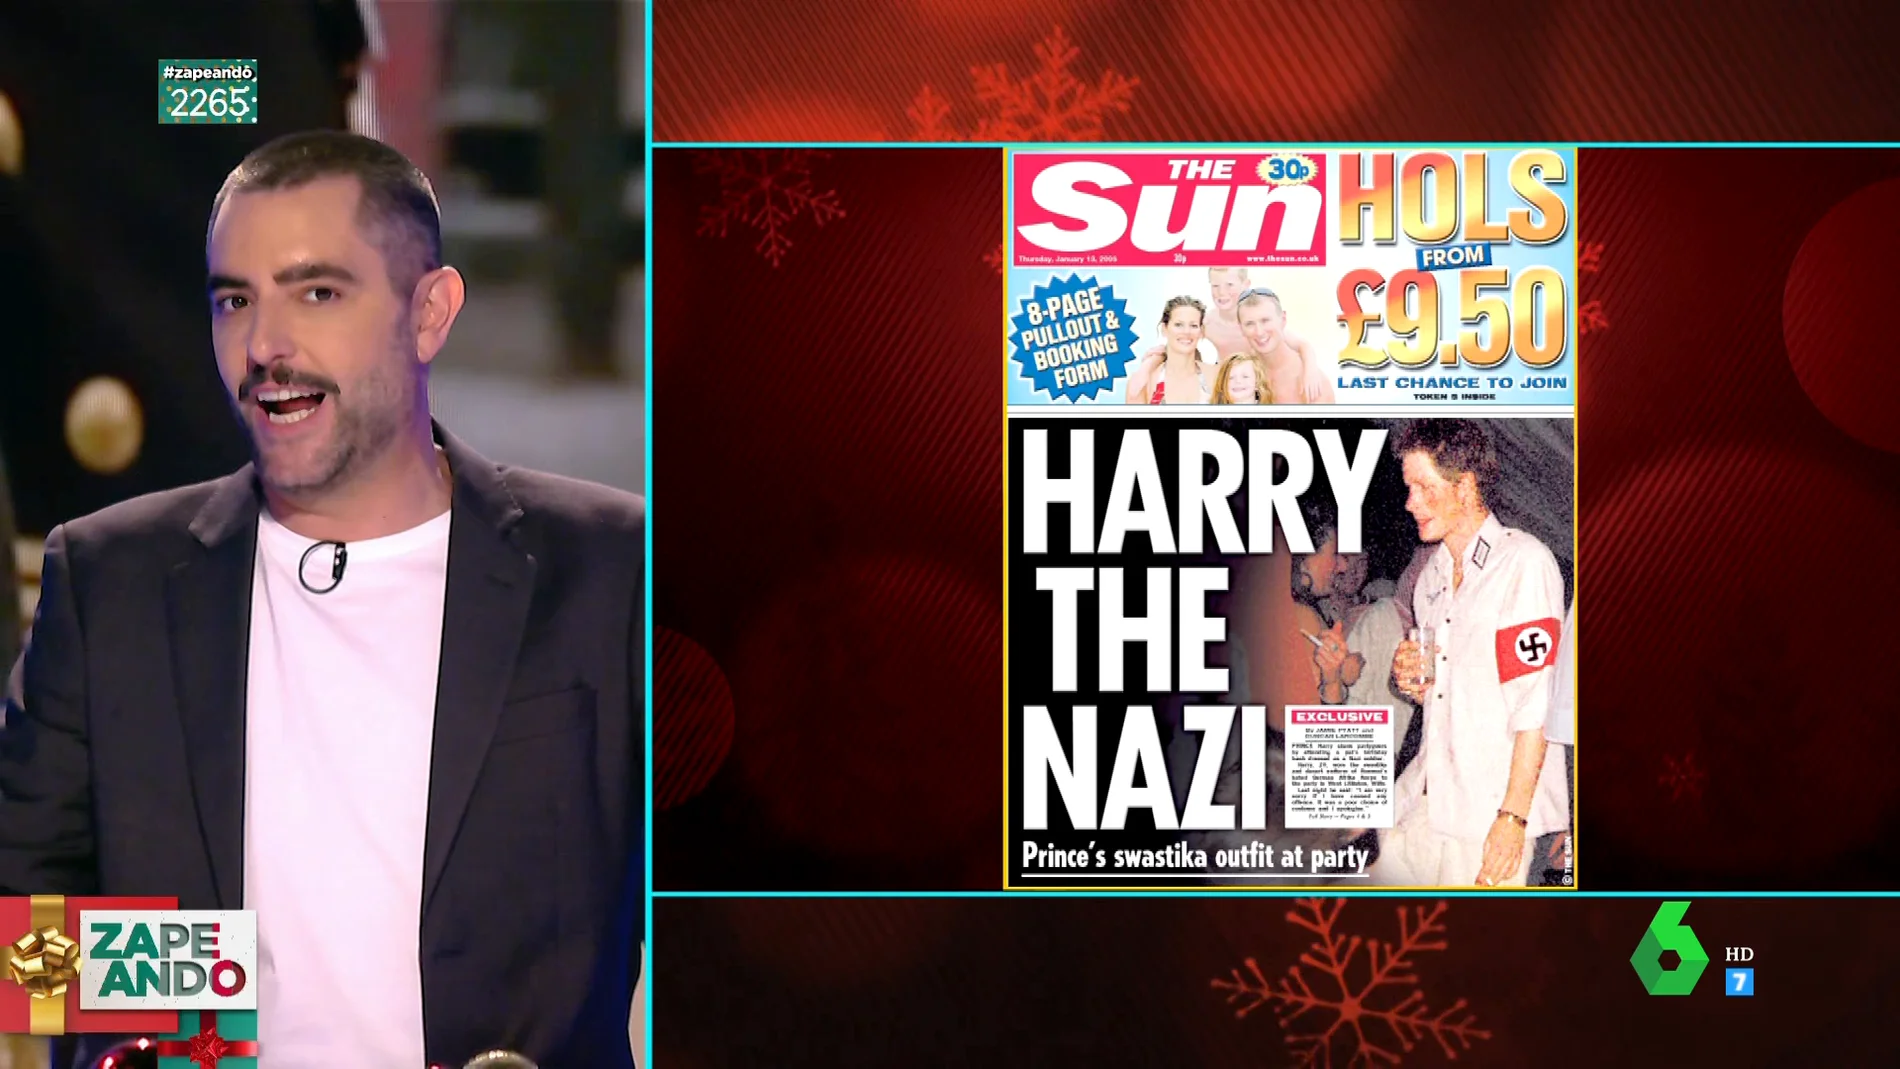 Harry desvela quién estuvo detrás de su criticado disfraz de nazi